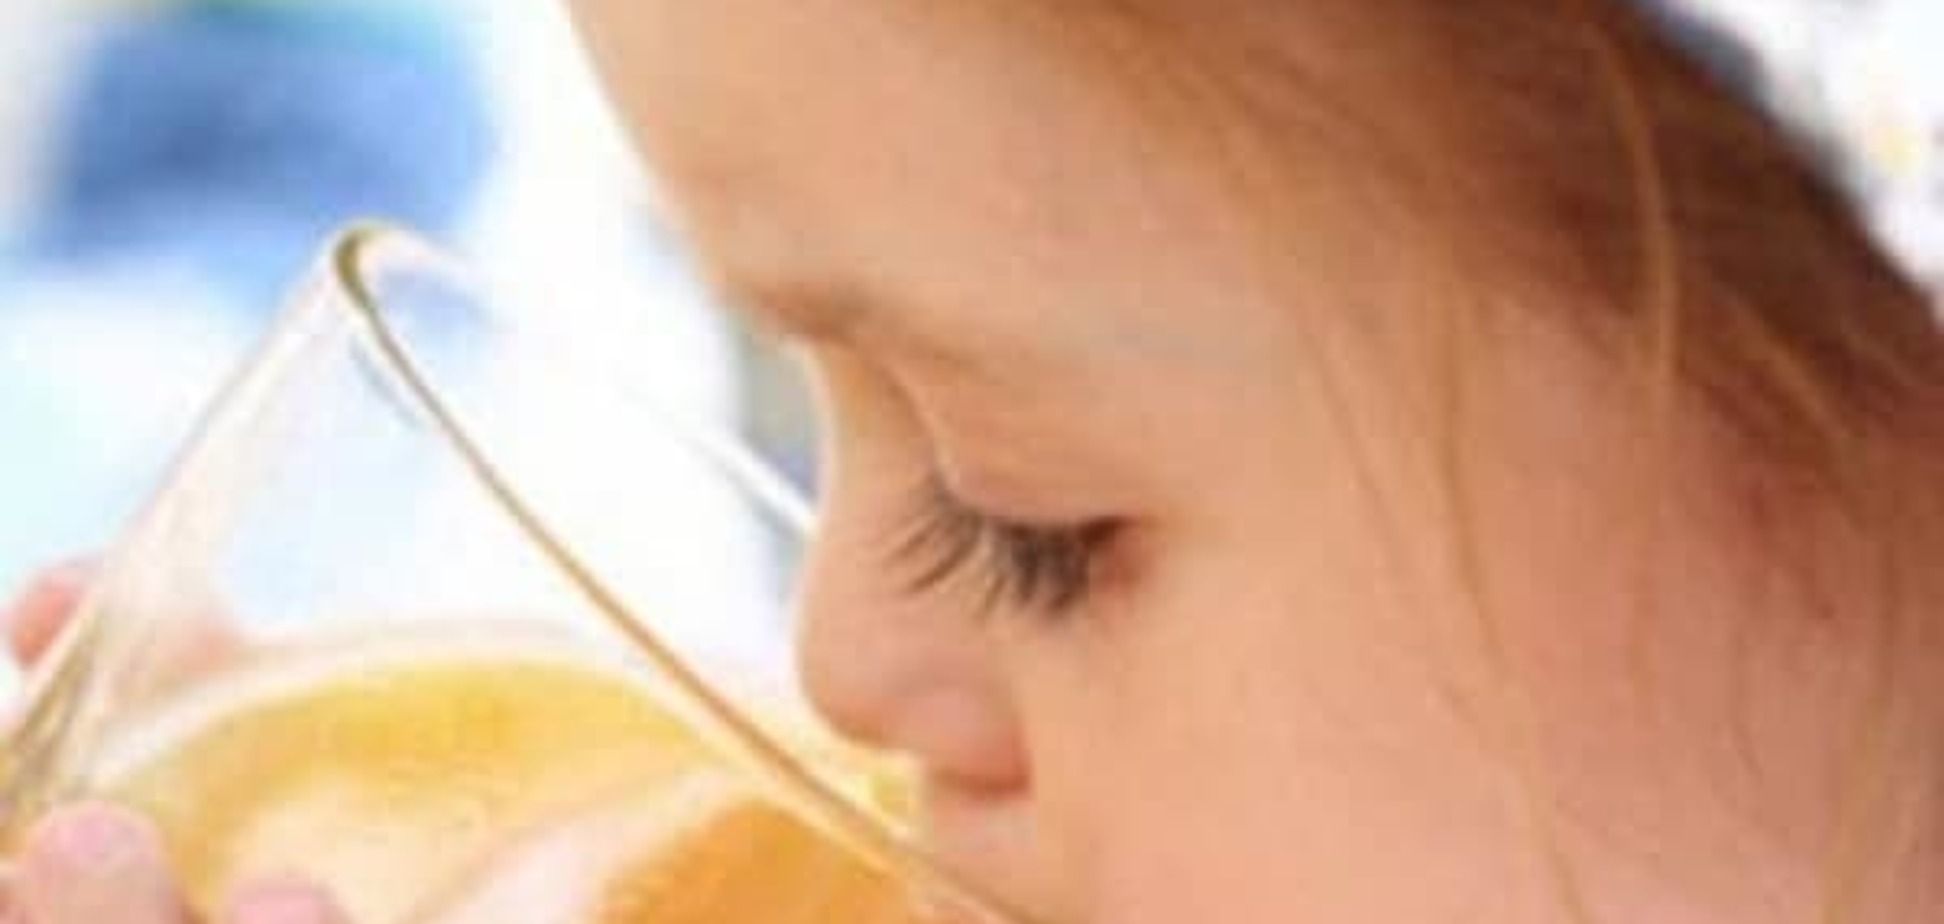 Сок – проблема в питании малыша?